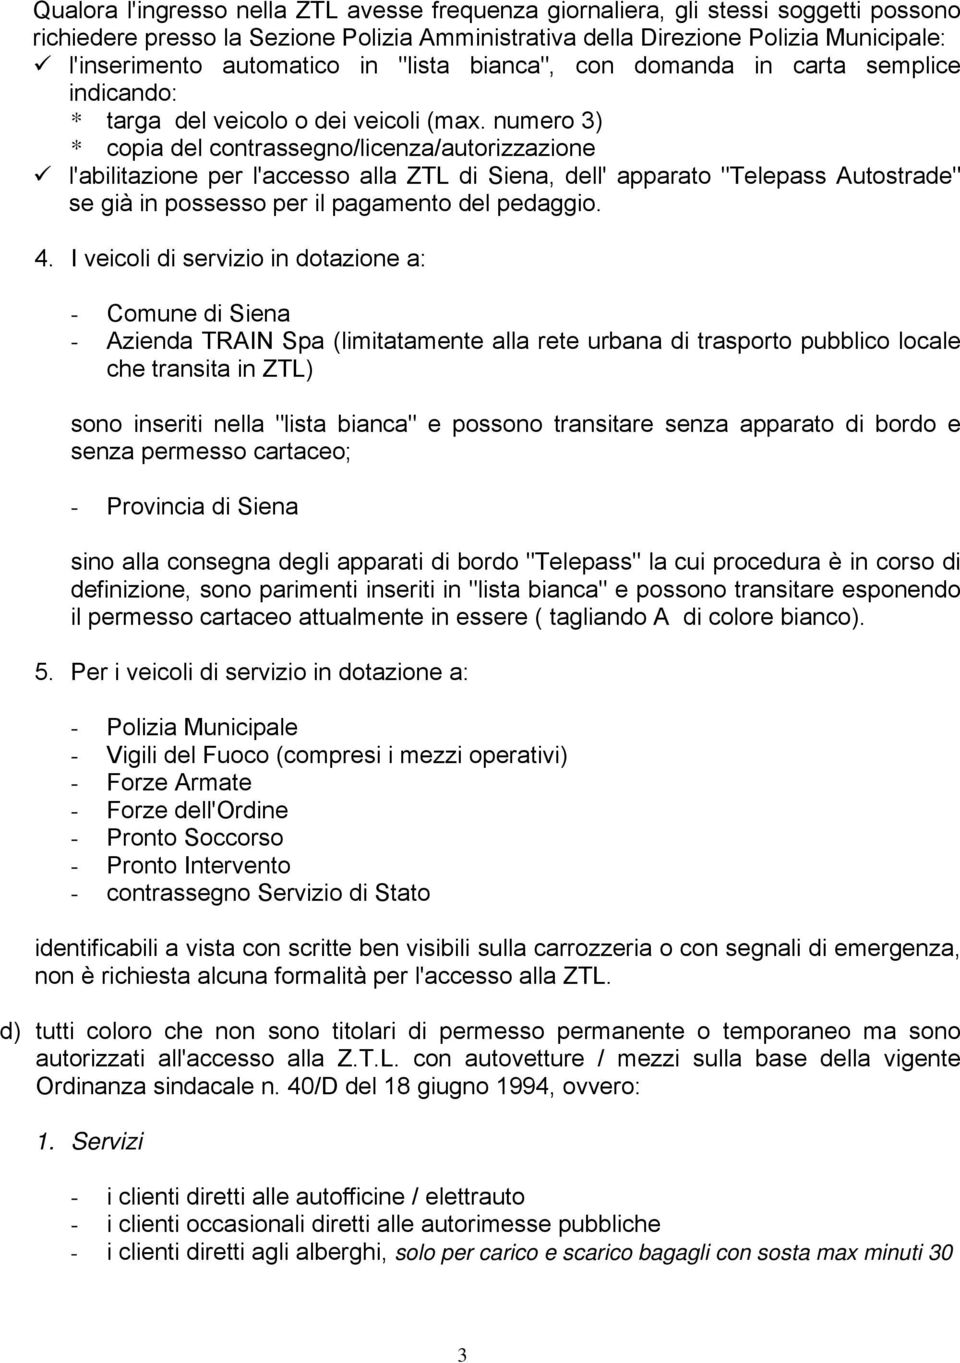 numero 3) * copia del contrassegno/licenza/autorizzazione l'abilitazione per l'accesso alla ZTL di Siena, dell' apparato "Telepass Autostrade" se già in possesso per il pagamento del pedaggio. 4.